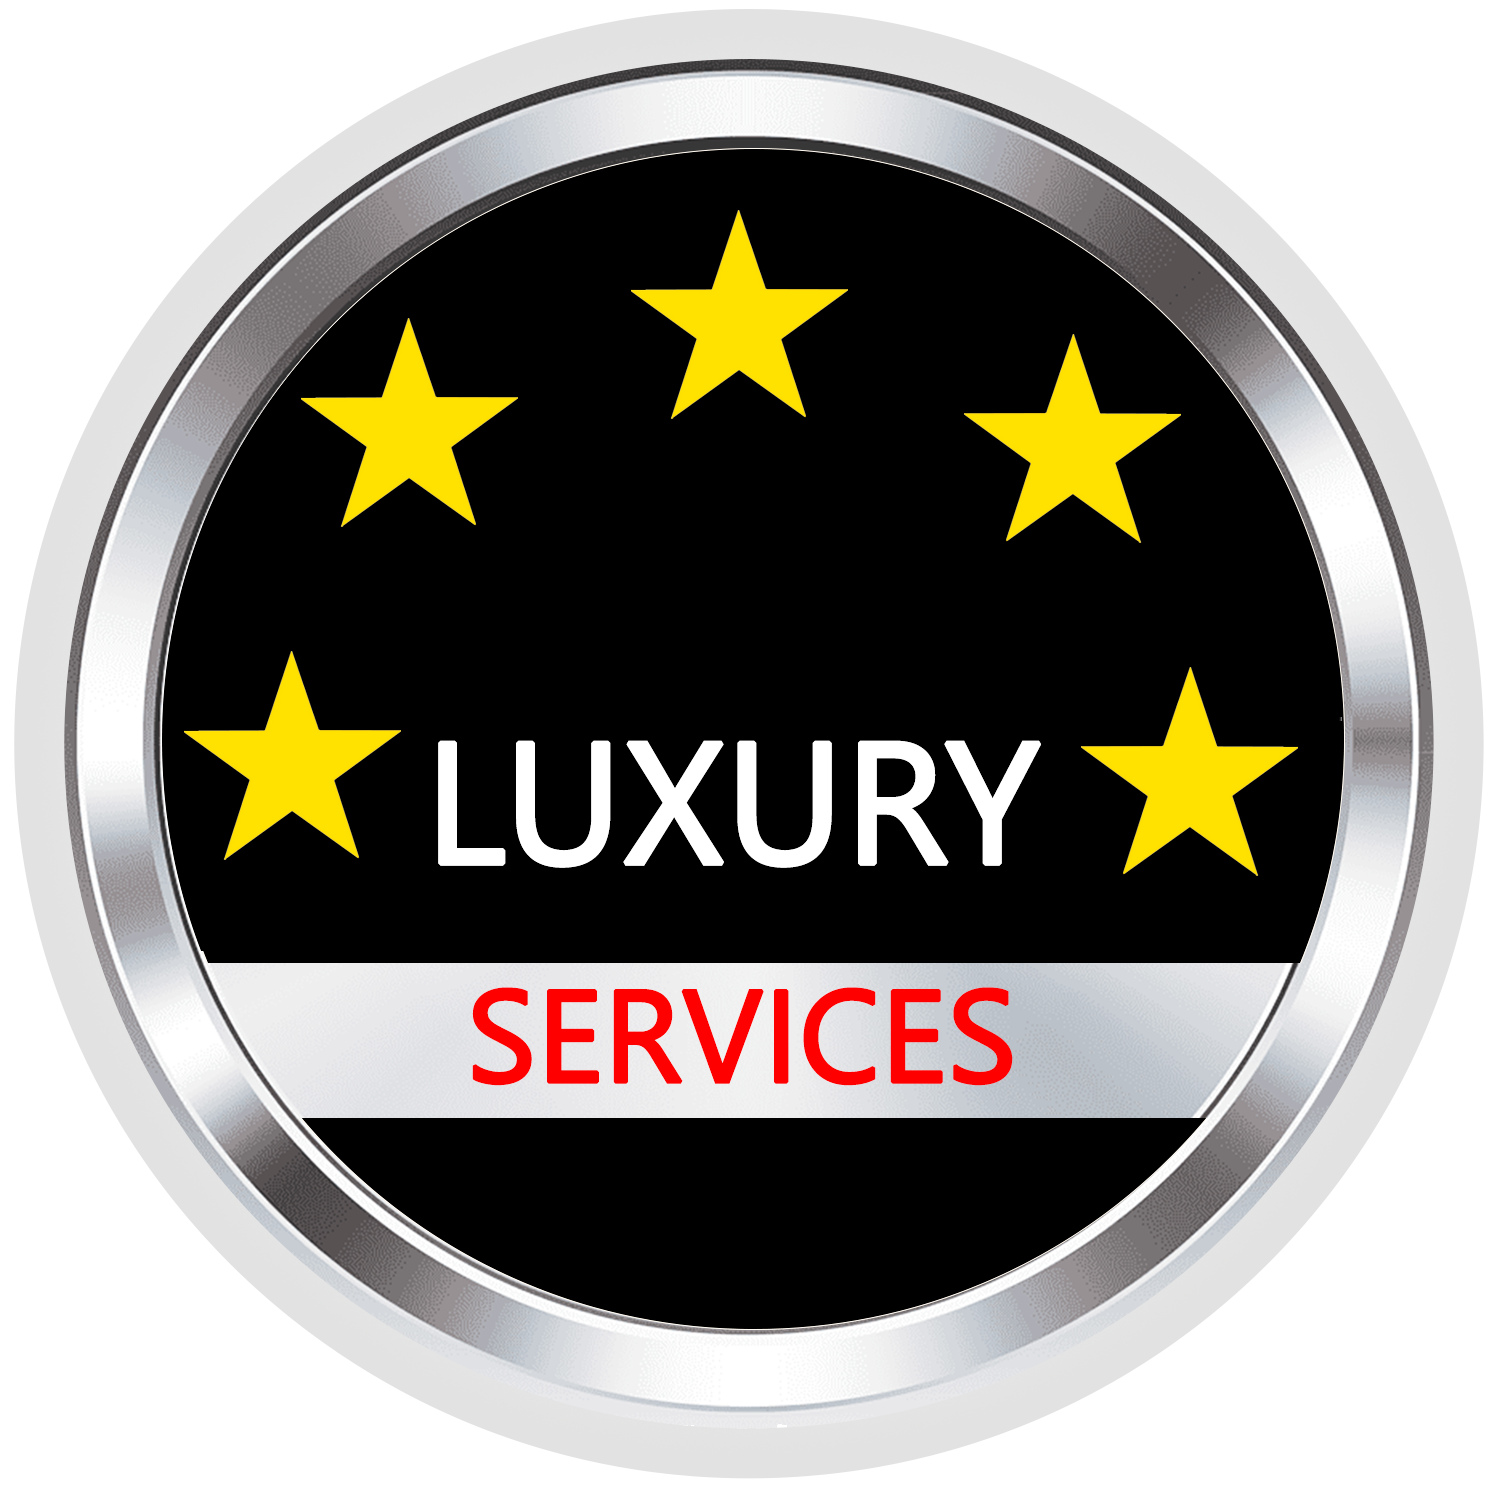 Luxury Services